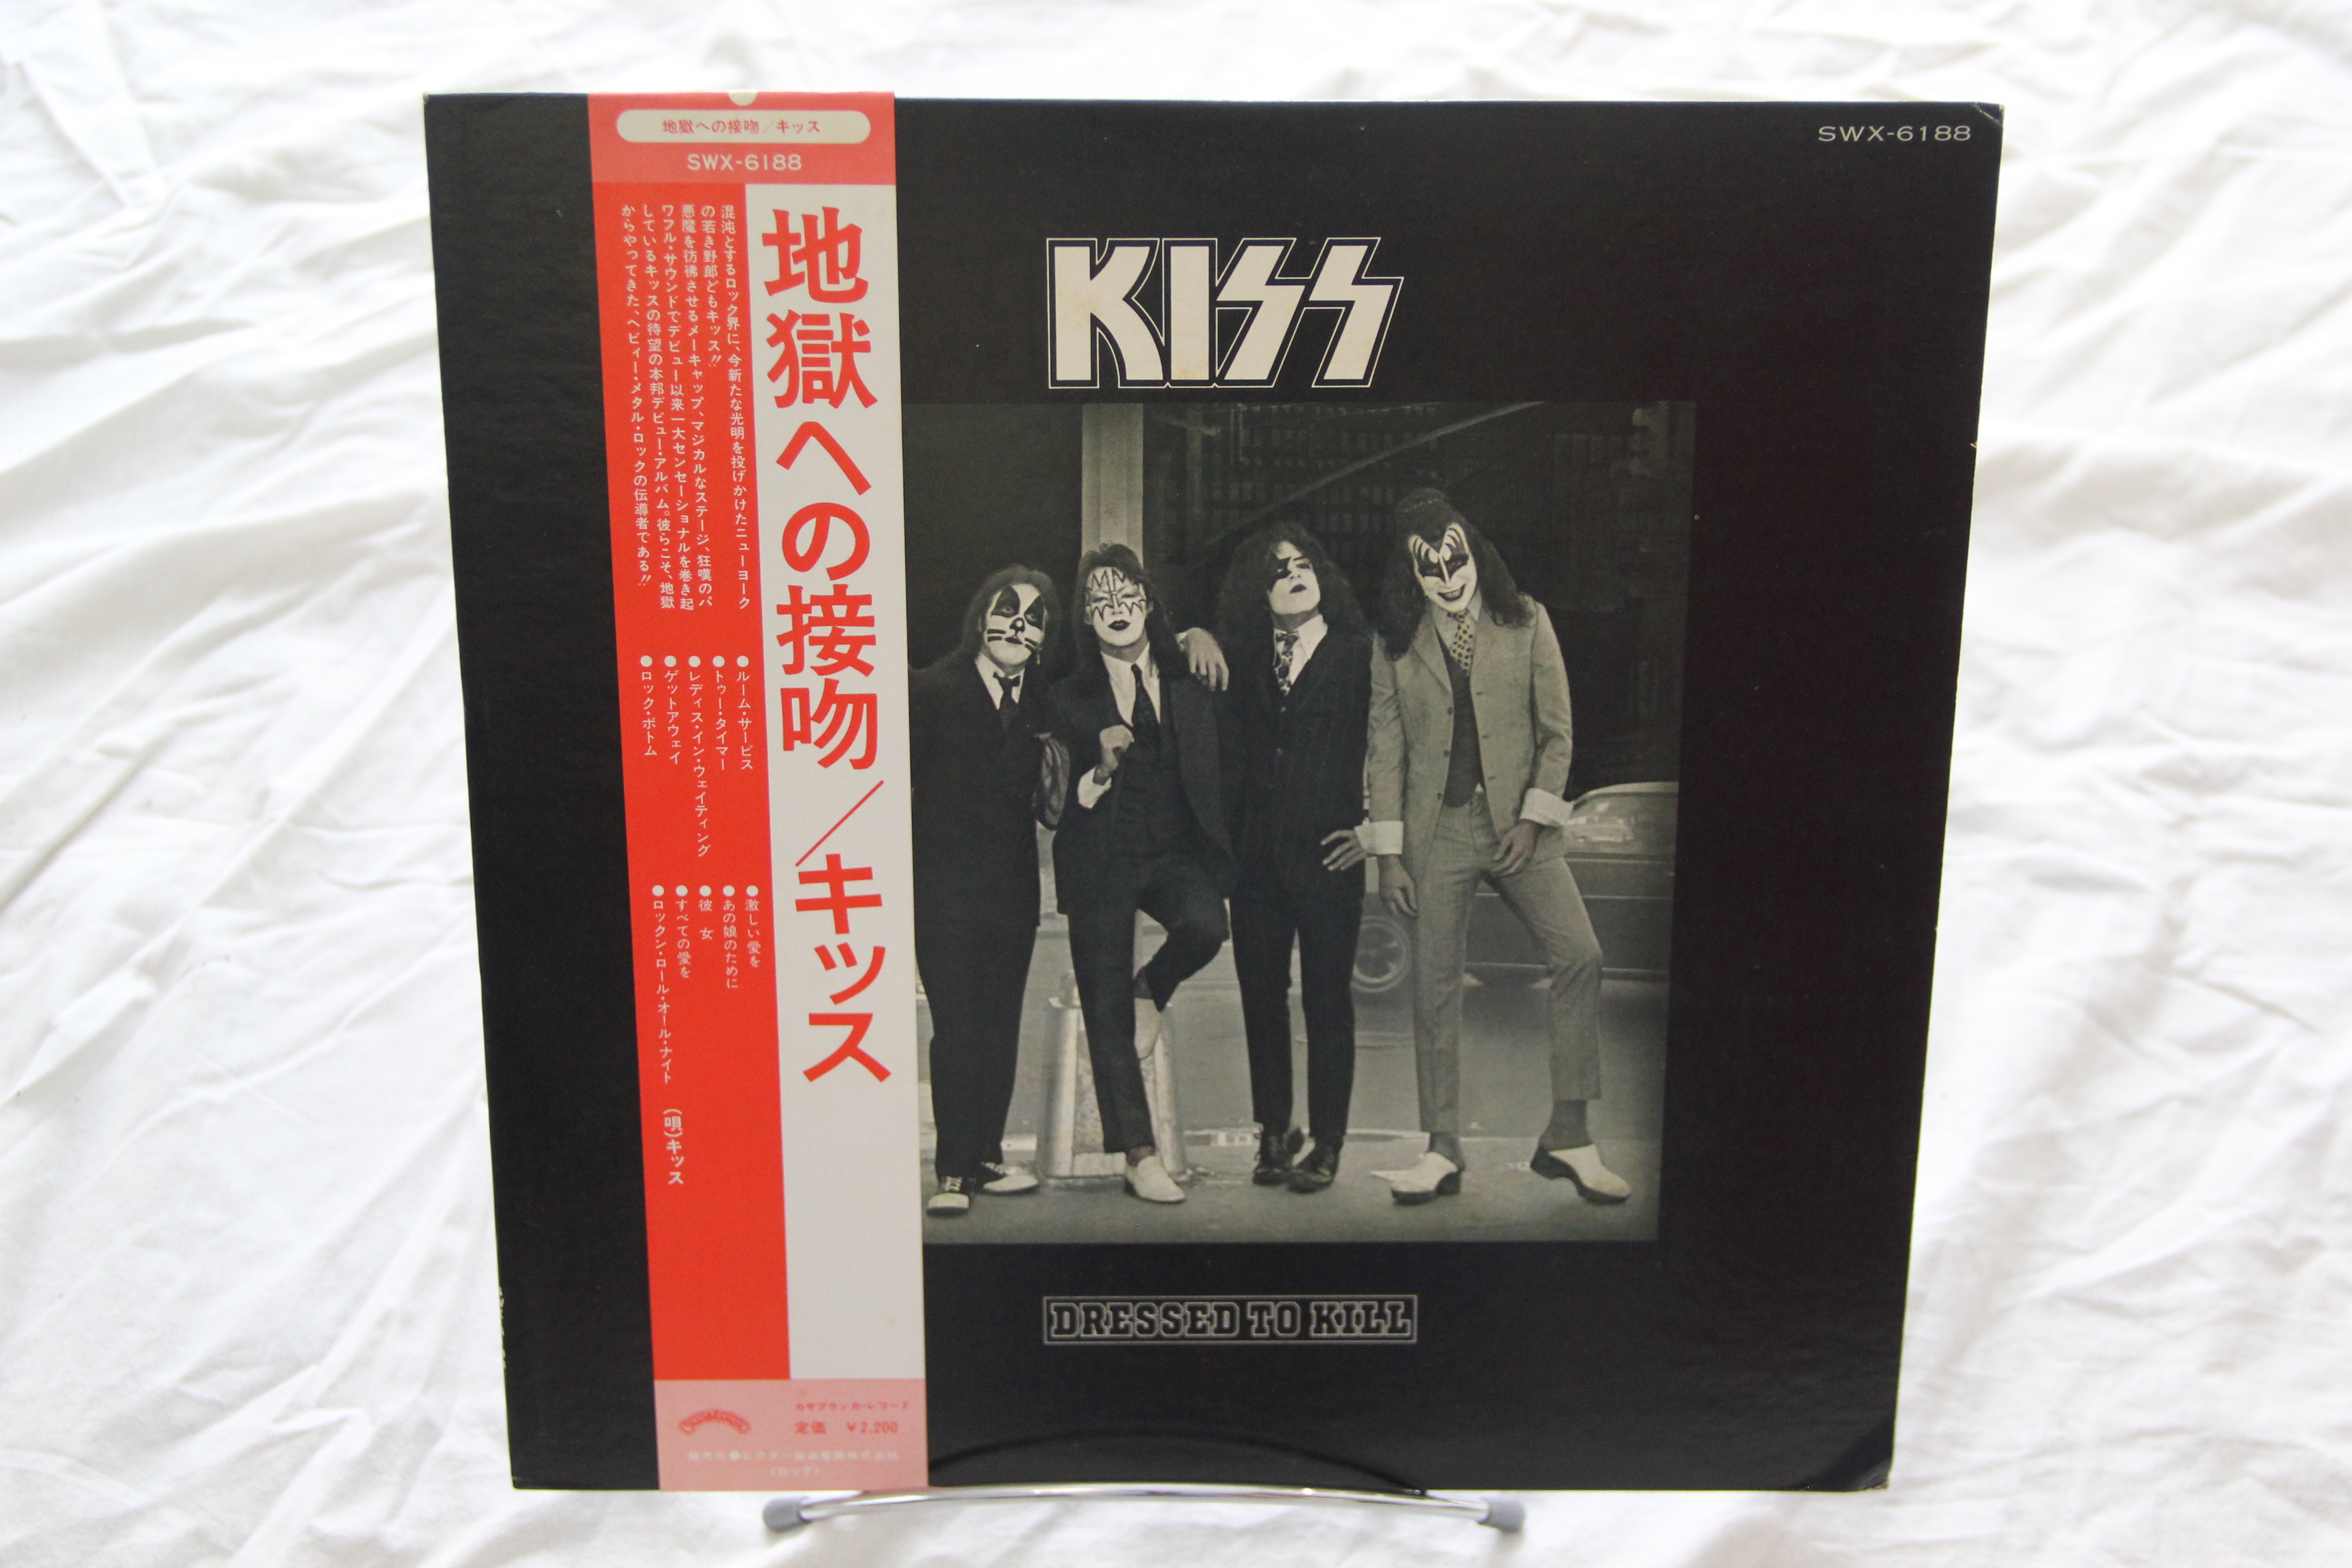 Dressed To Kill Kiss Hard Rock, Glam Vinyl LP Casablanca SWX-6188